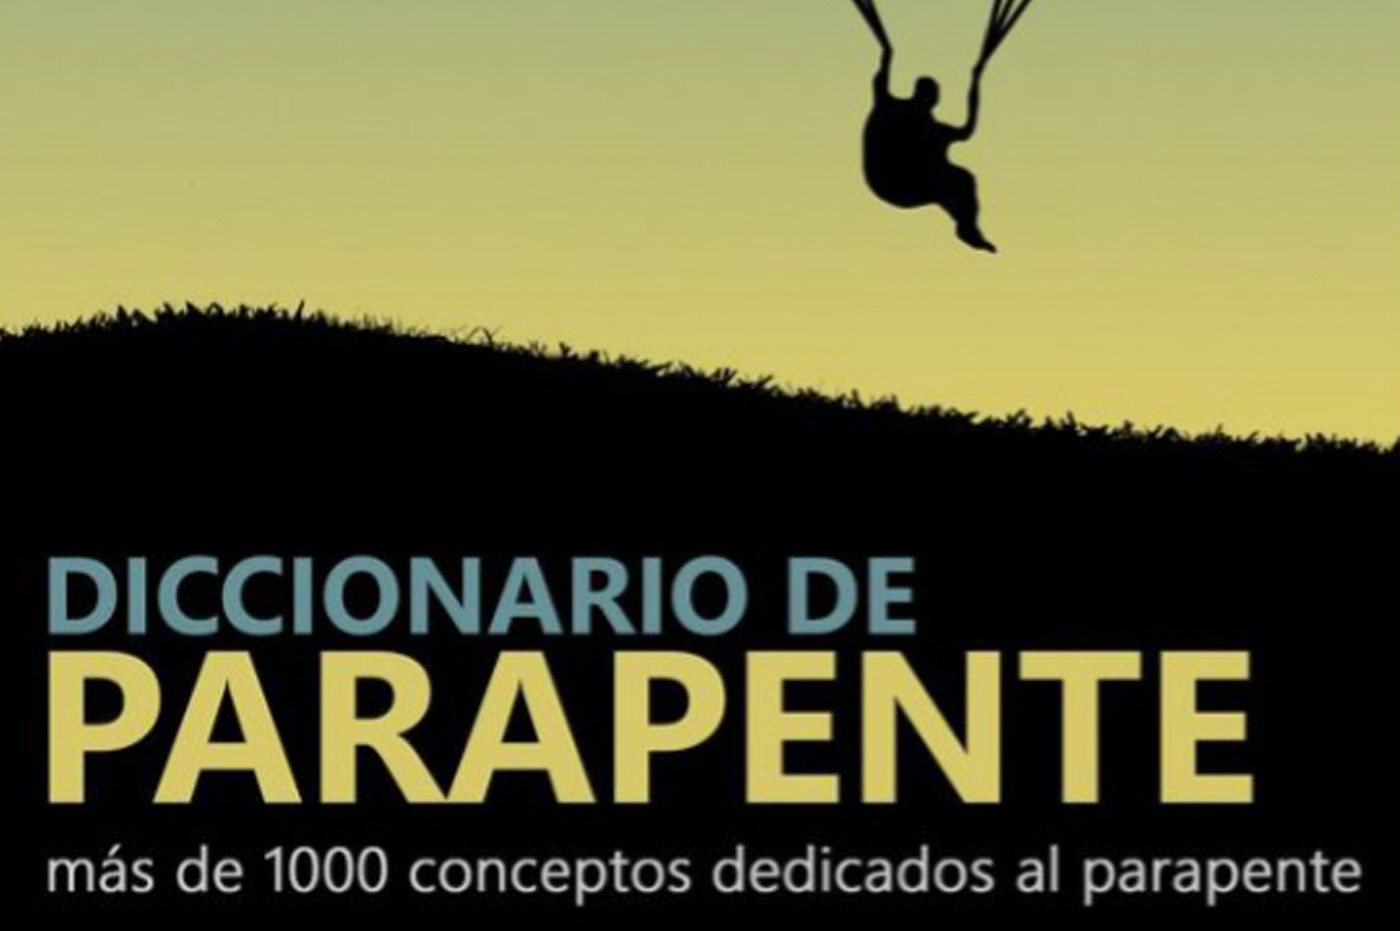 Diccionario de Parapente Contiene cerca de 2000 términos directa o indirectamente relacionados con el parapente y vuelo libre en general.